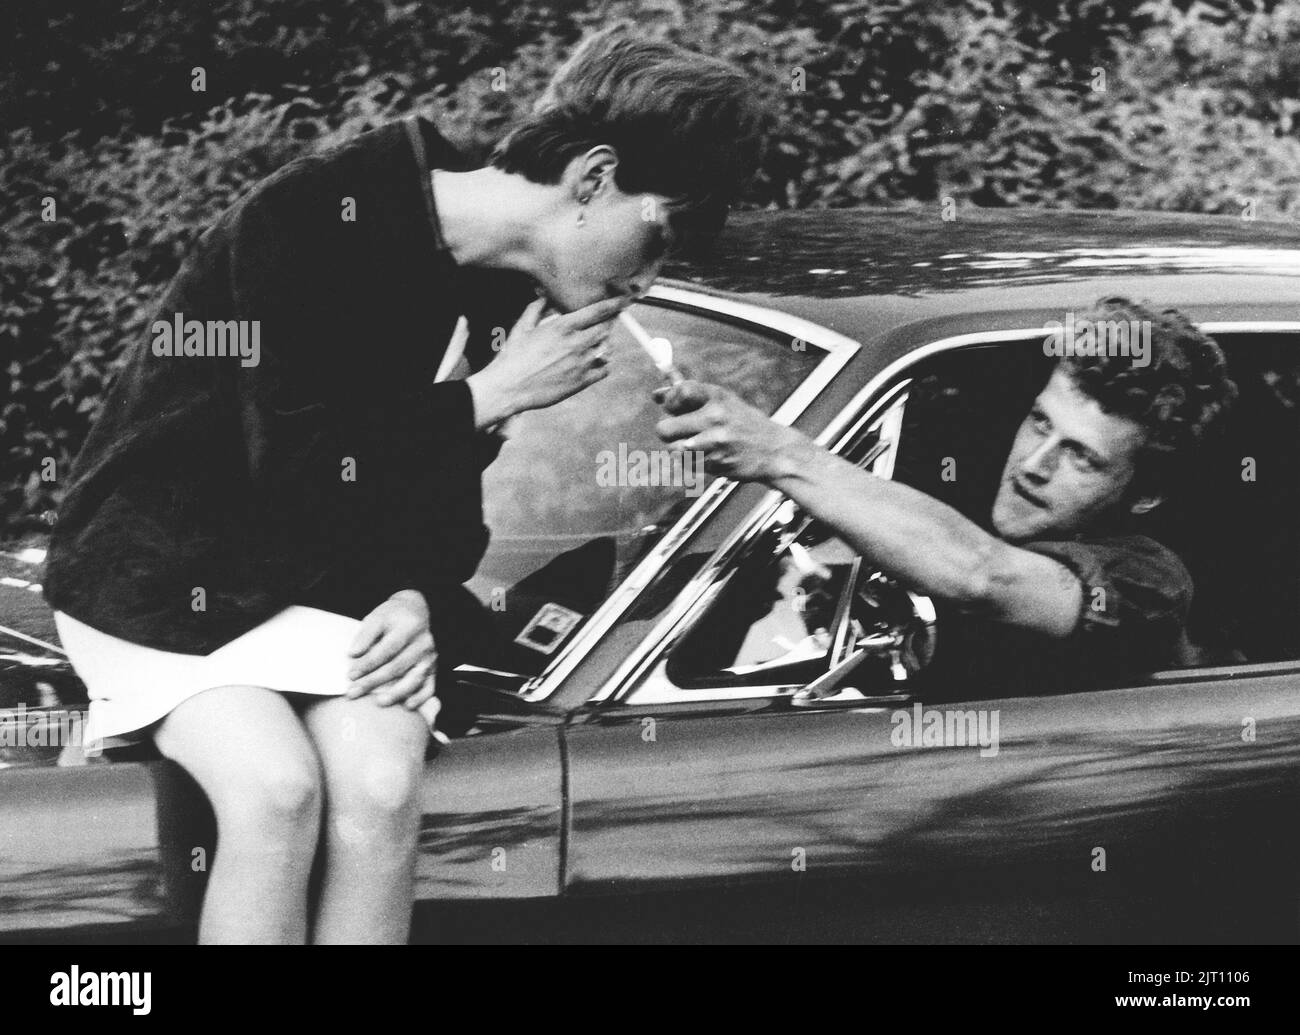 Dans le 1960s. Une femme est assise sur le capot d'une voiture et un homme atteint avec un allume-cigare pour allumer ses feux. L'année est 1964. Suède Banque D'Images